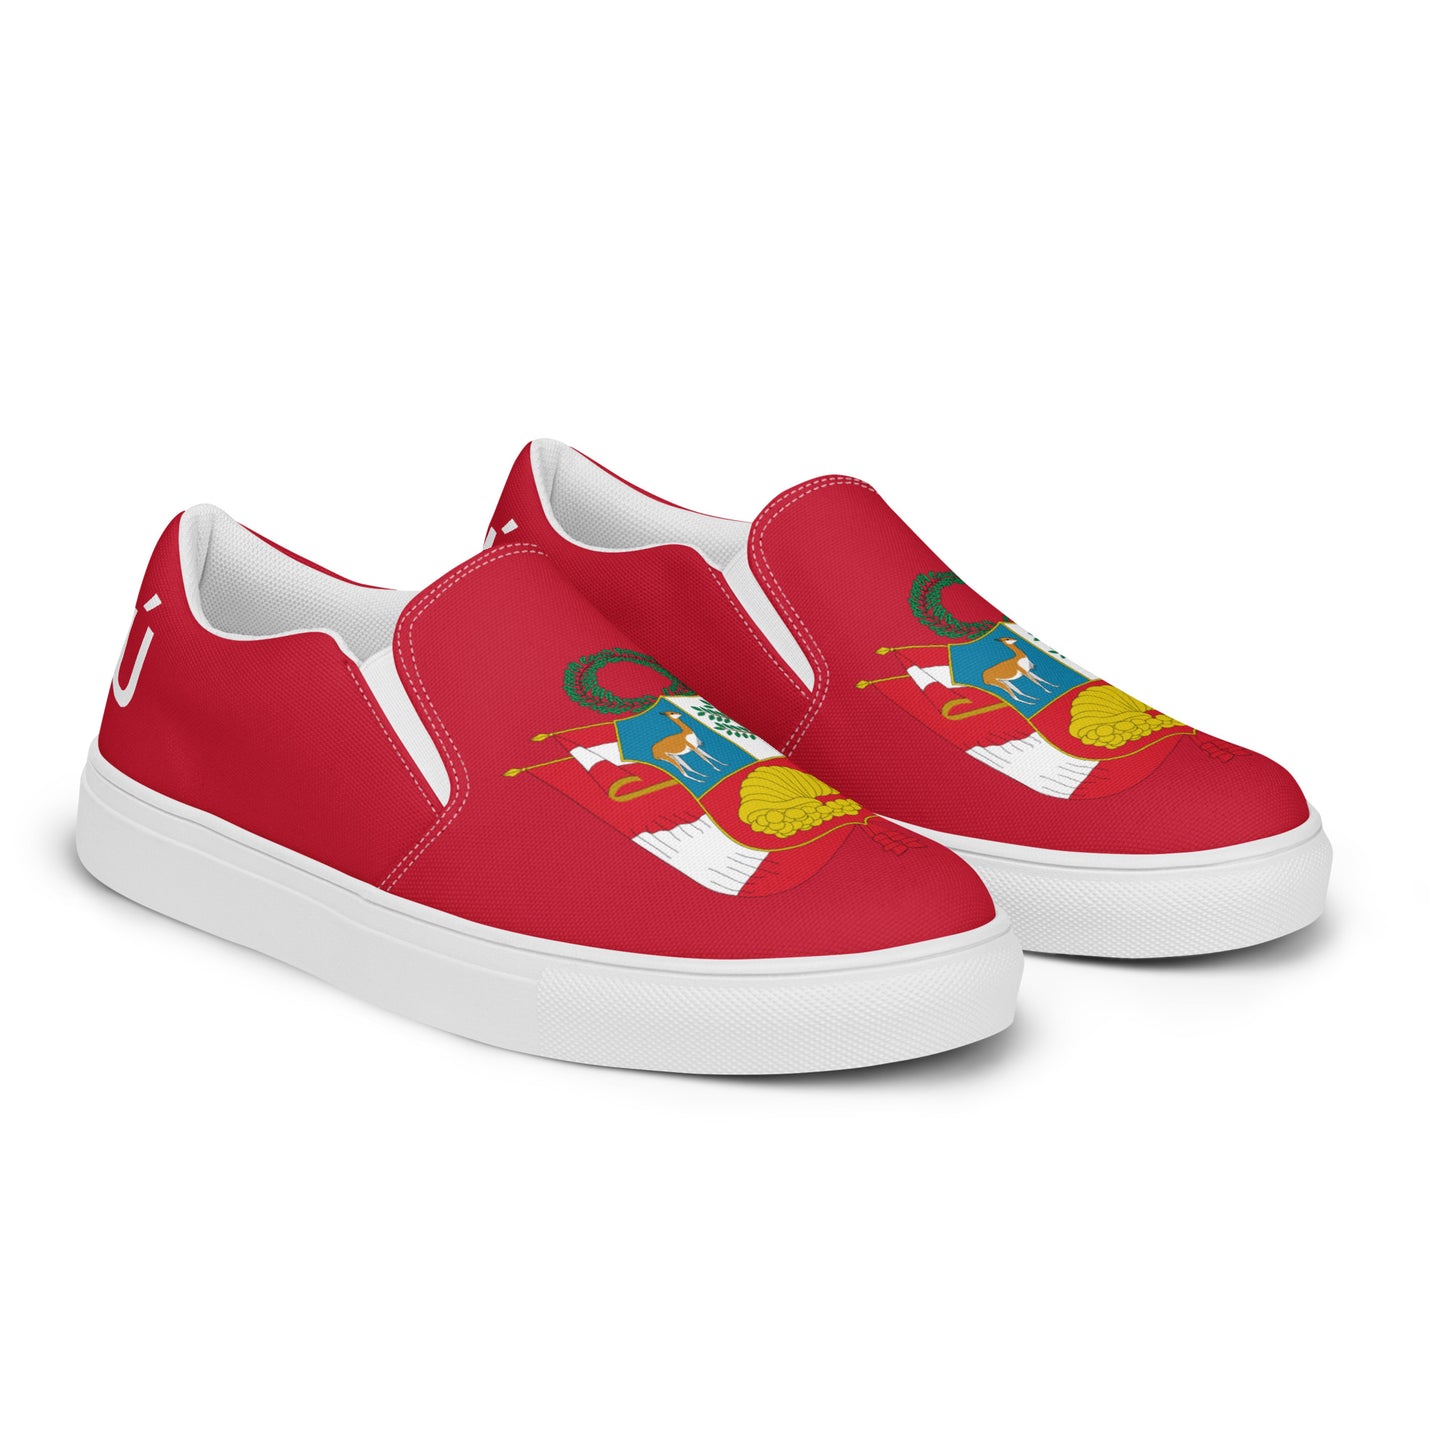 Perú - Men - Red - Slip-on shoes